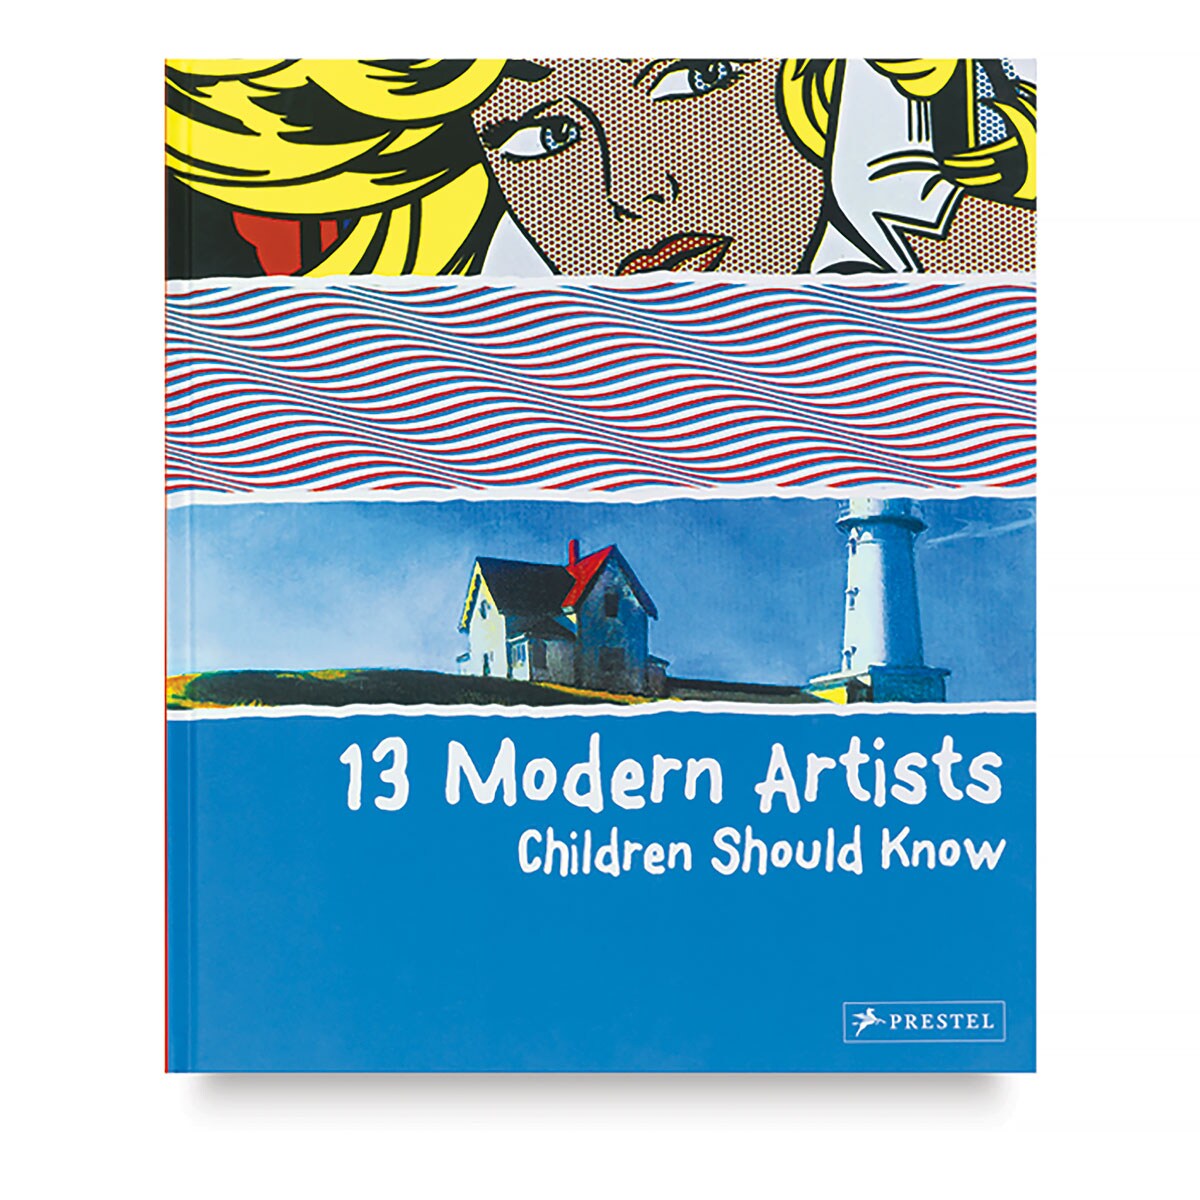 13 Modern Artists Children Should Know